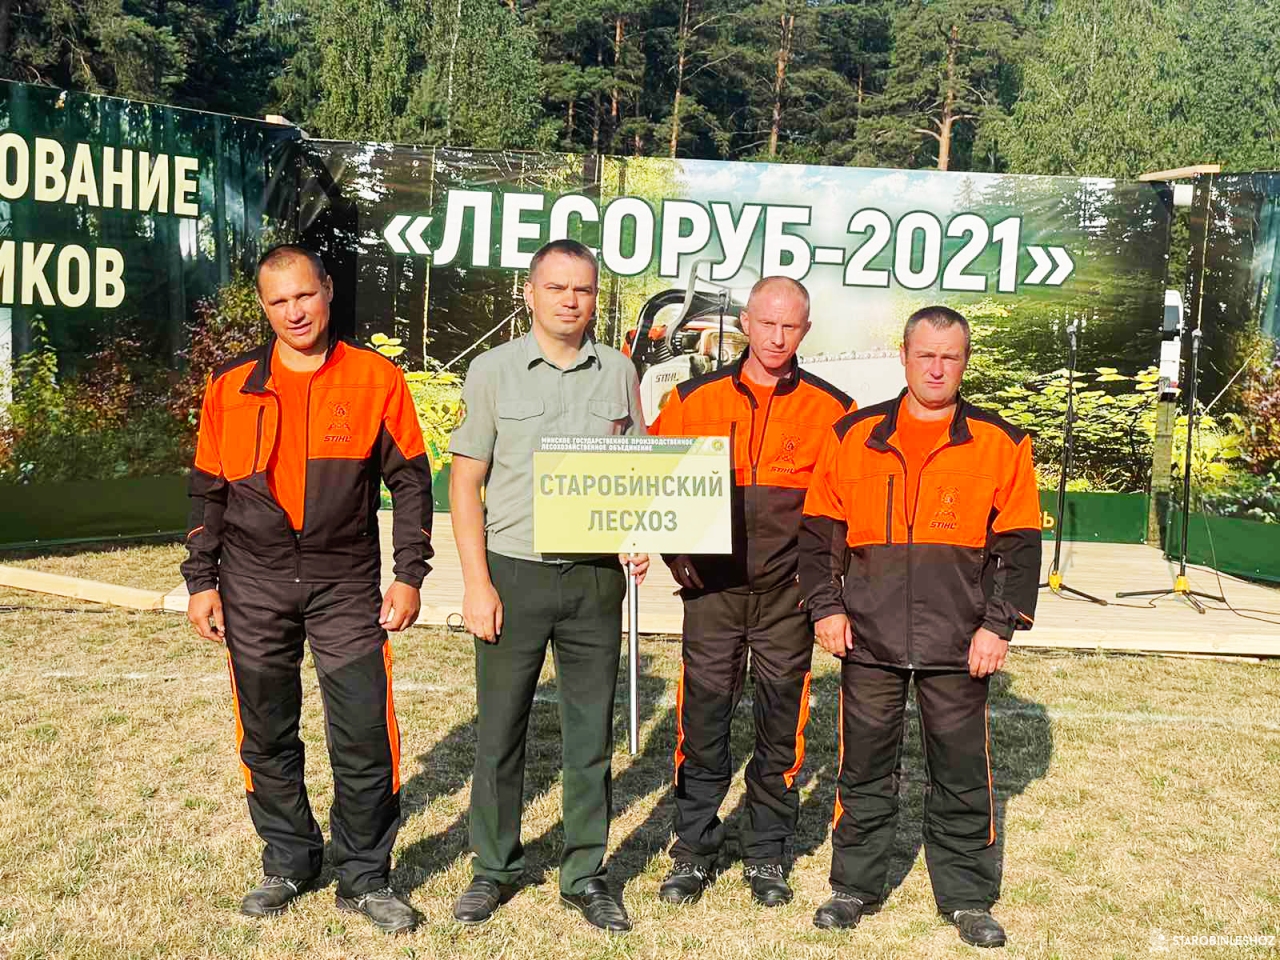 Областные соревнования вальщиков леса «Лесоруб-2021» прошли в Новокрупском лесхозе